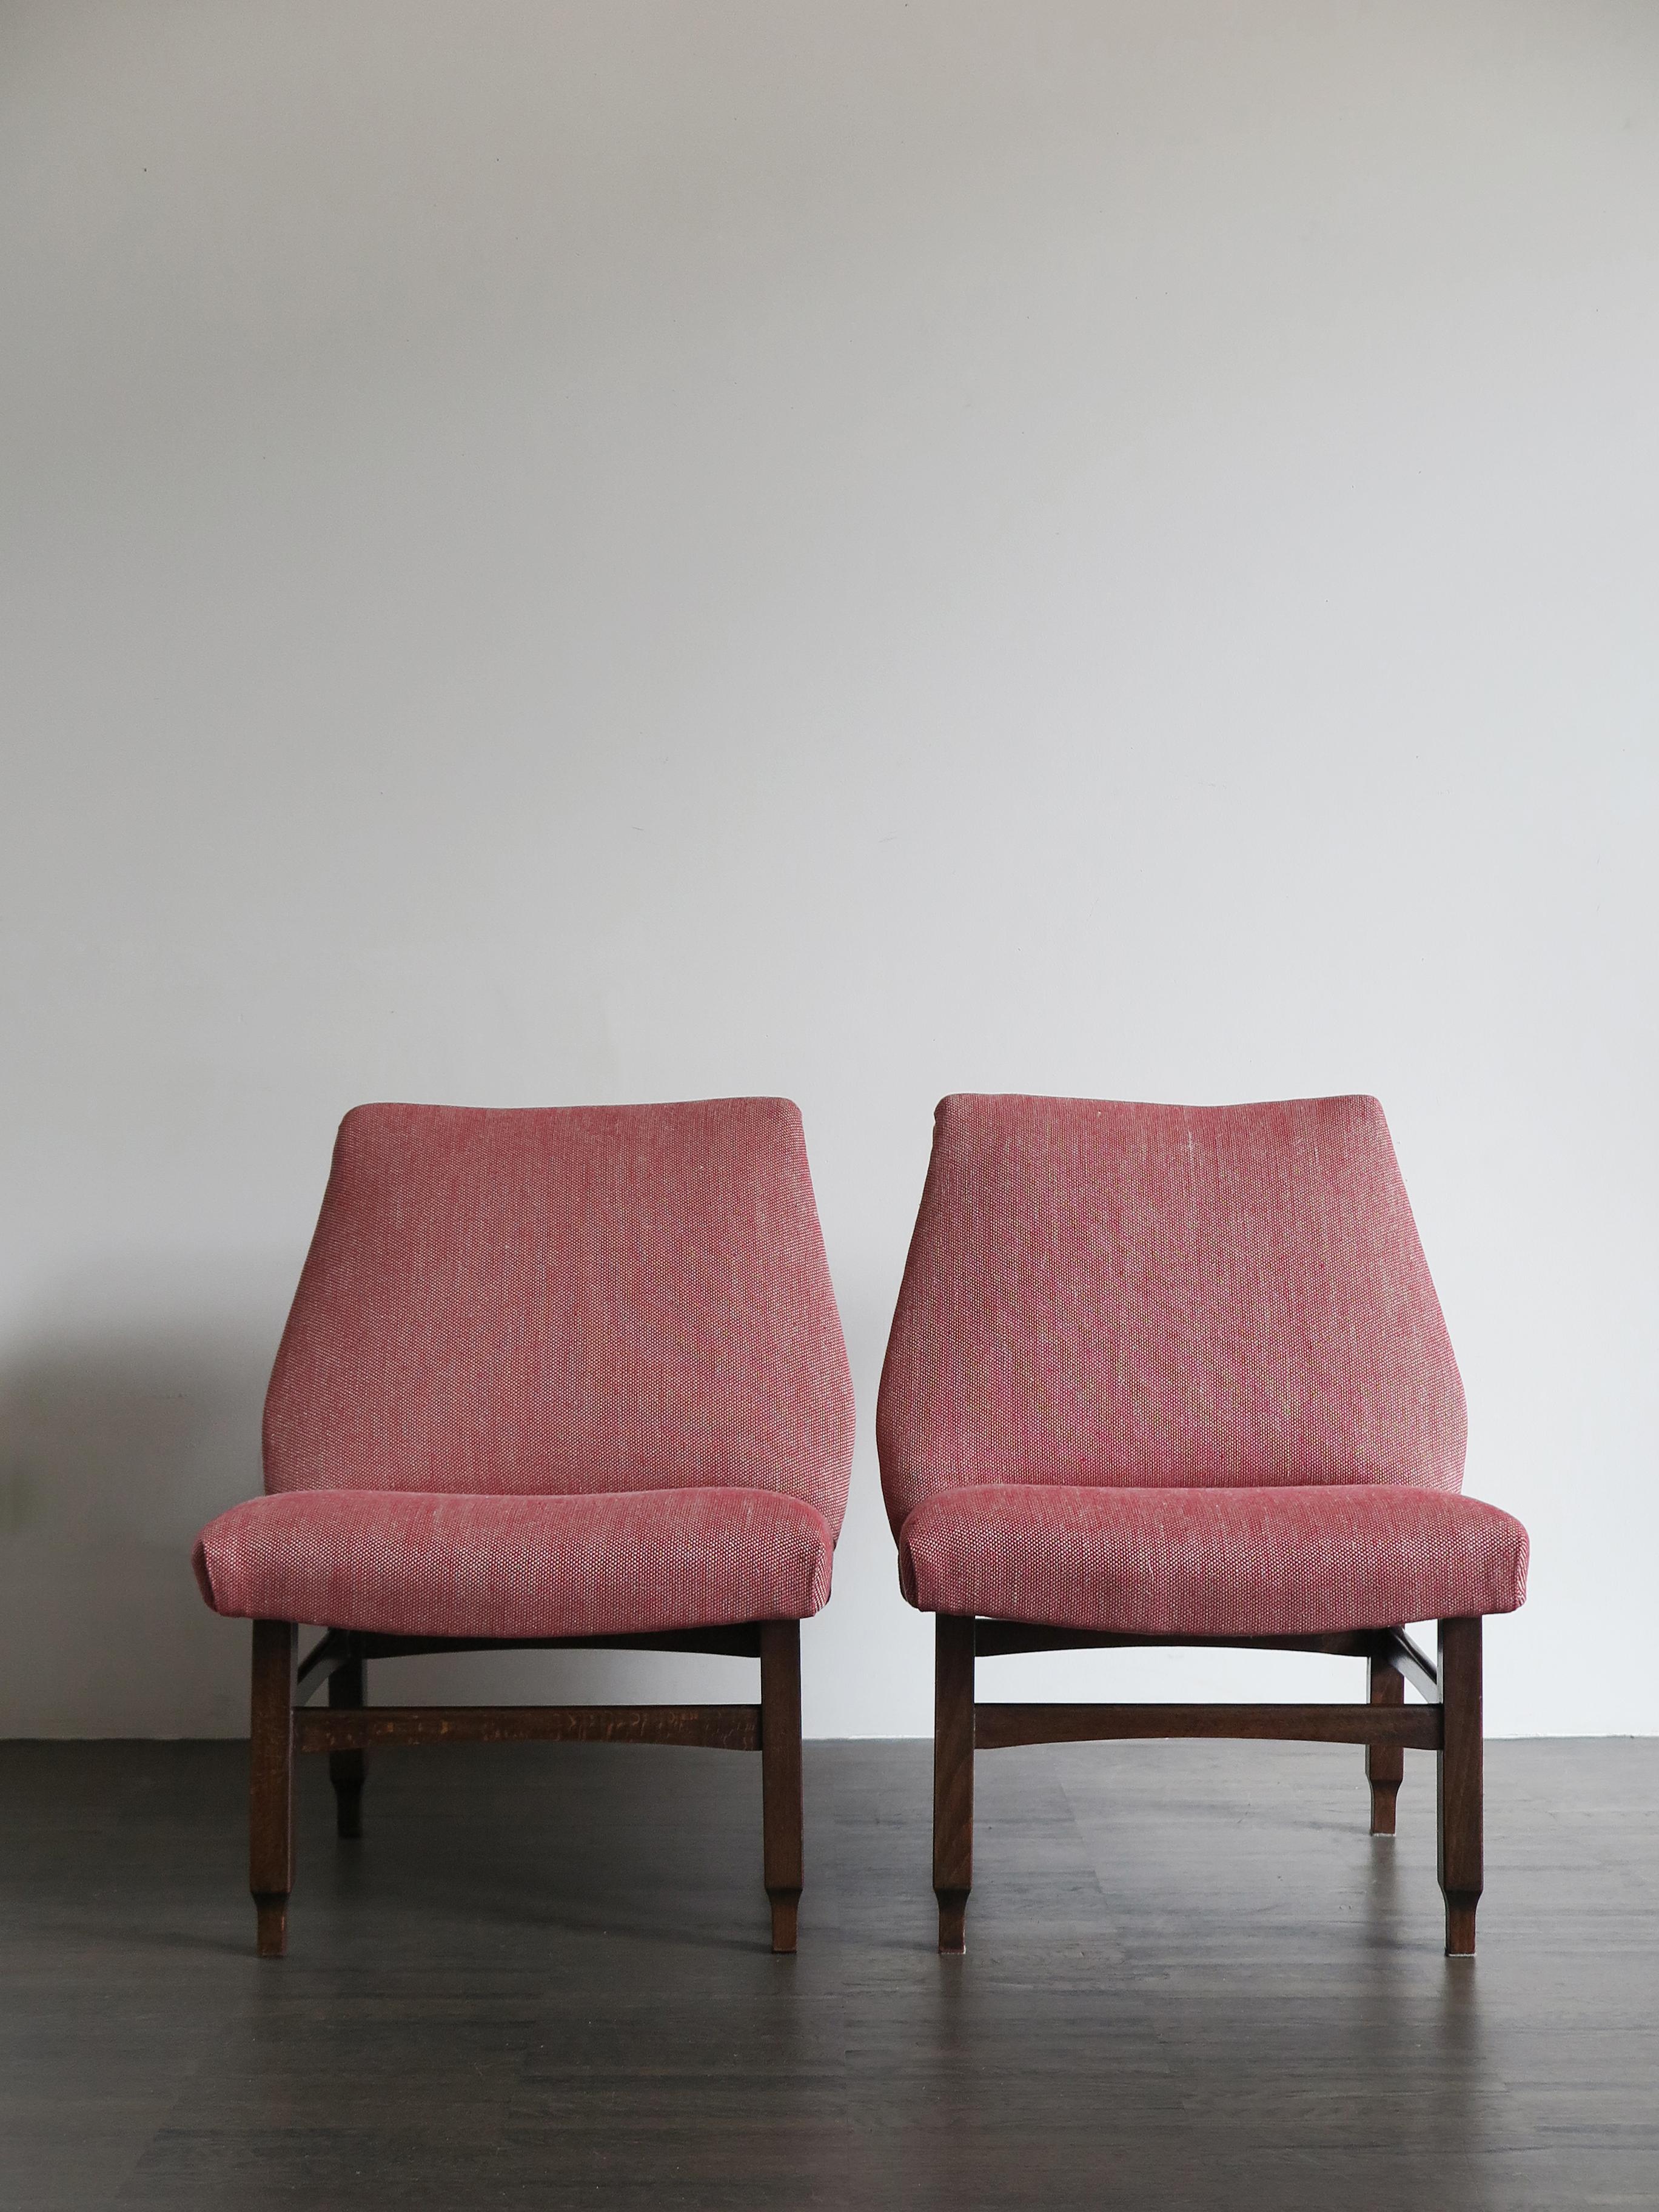 Ensemble de deux fauteuils italiens de design Mid-Century Modern avec structure en bois massif et avec rembourrage et tapisserie neufs, années 1950.
Très bon état vintage.